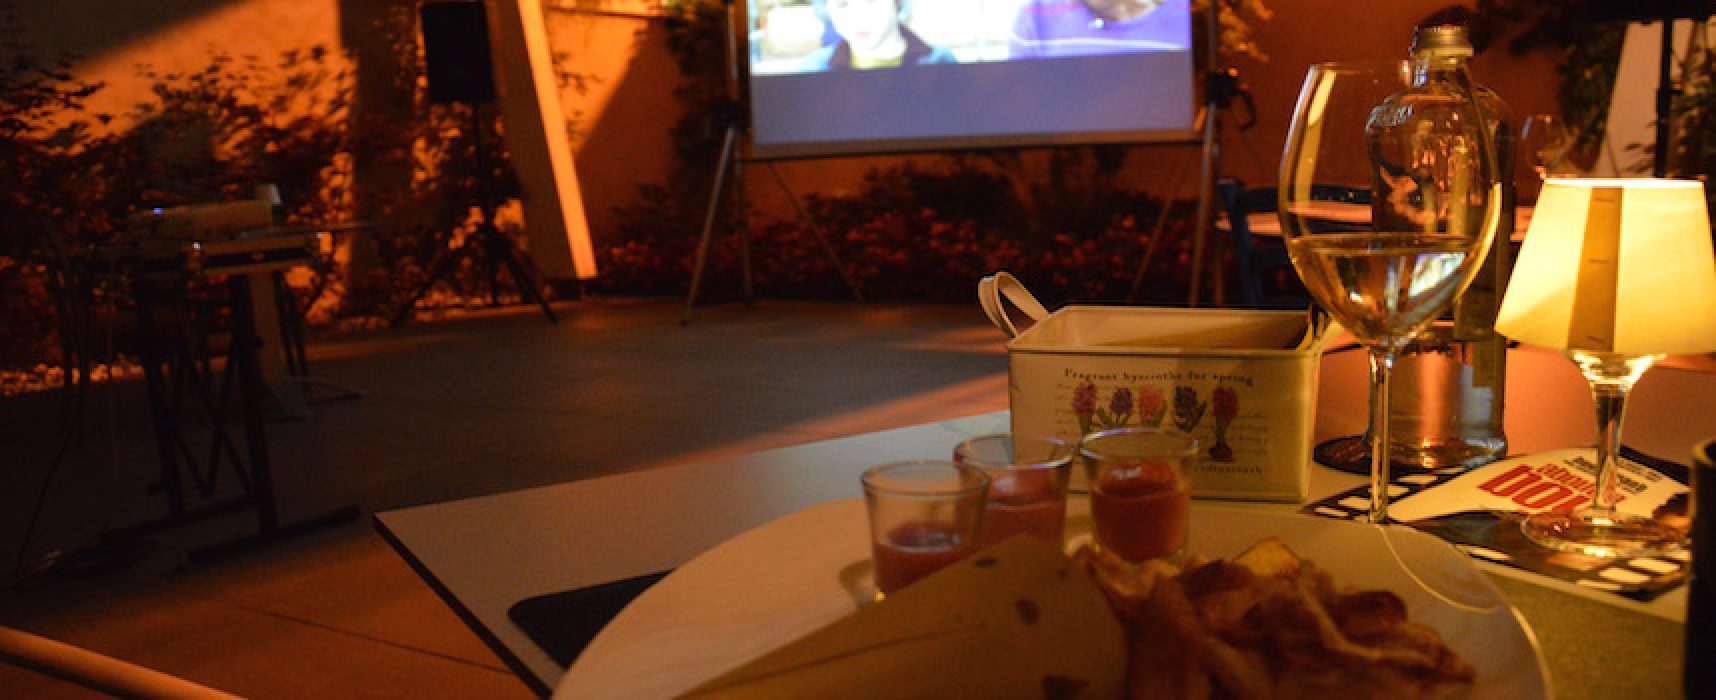 Cinema e gusto, una simbiosi vincente per la prima serata di “CineMAtematico”